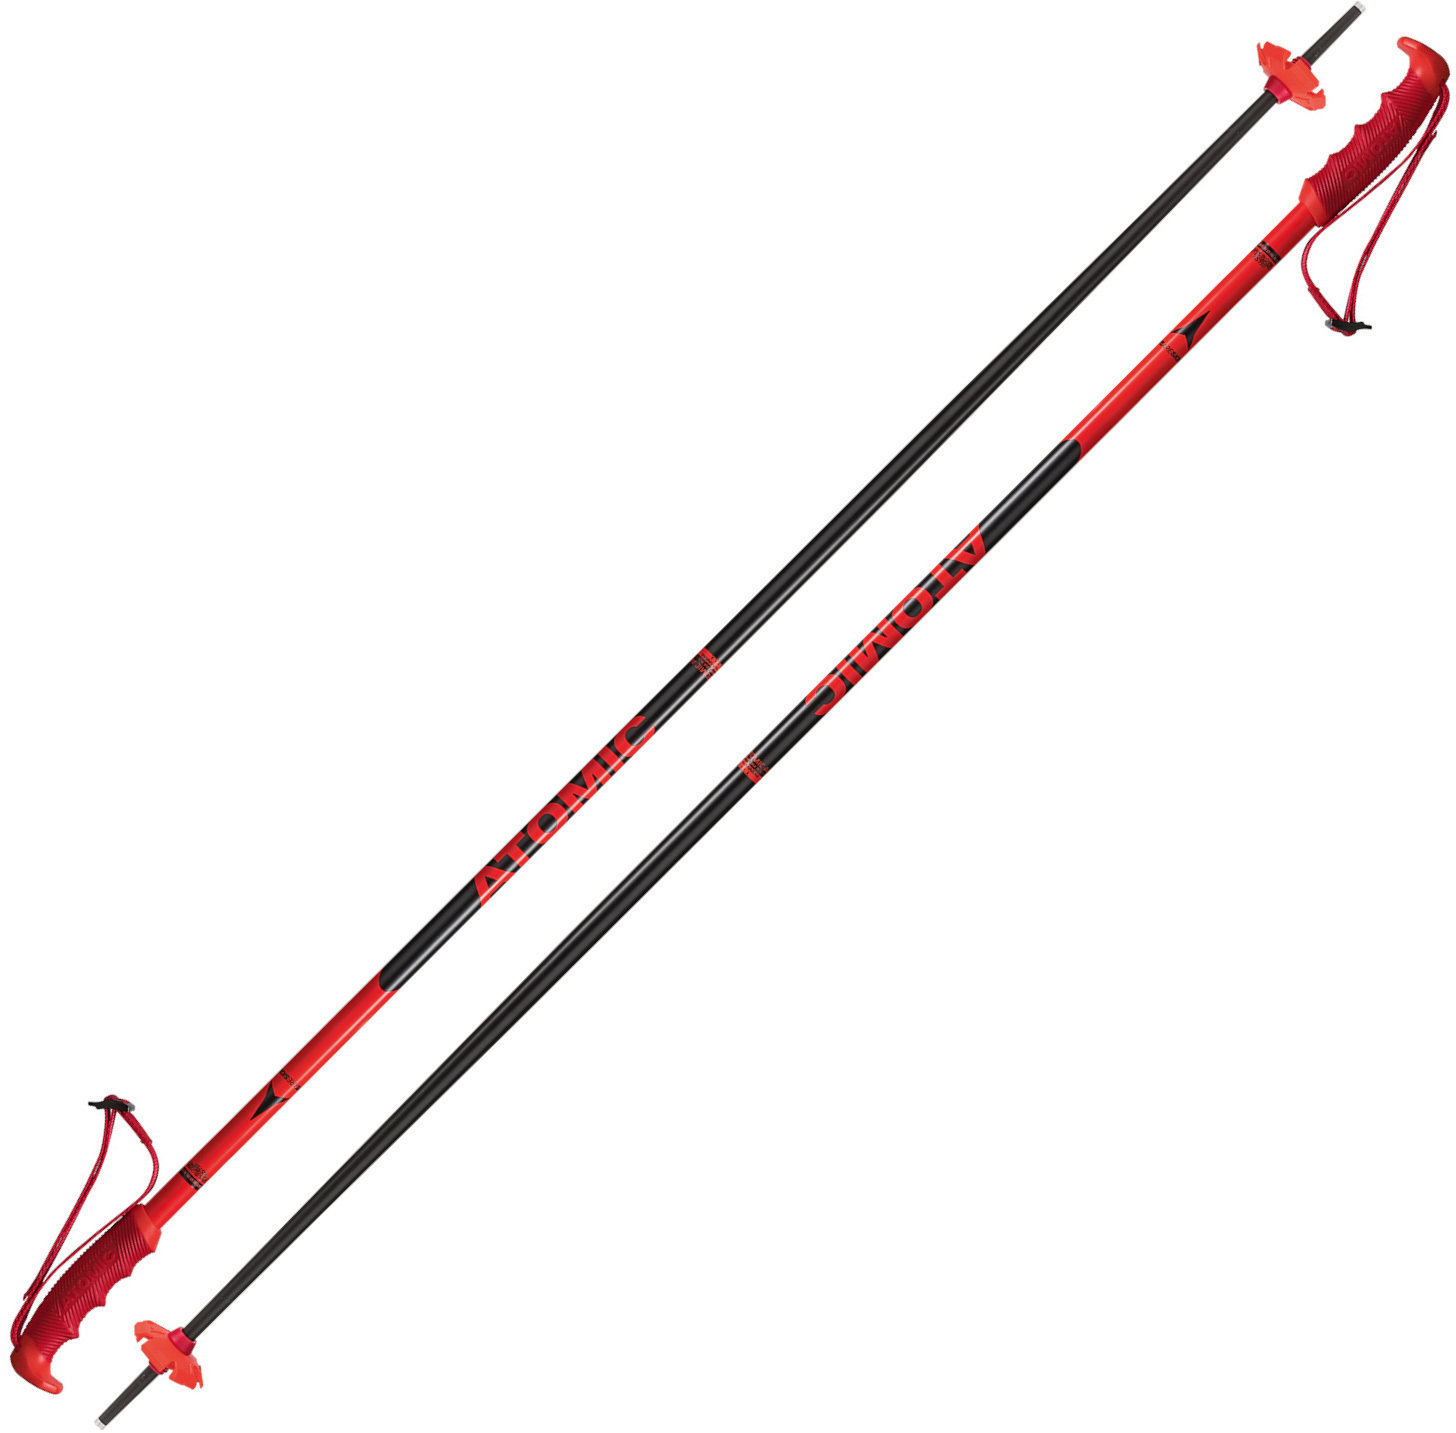 Ski-Stöcke Atomic Redster Red/Black 120 cm Ski-Stöcke